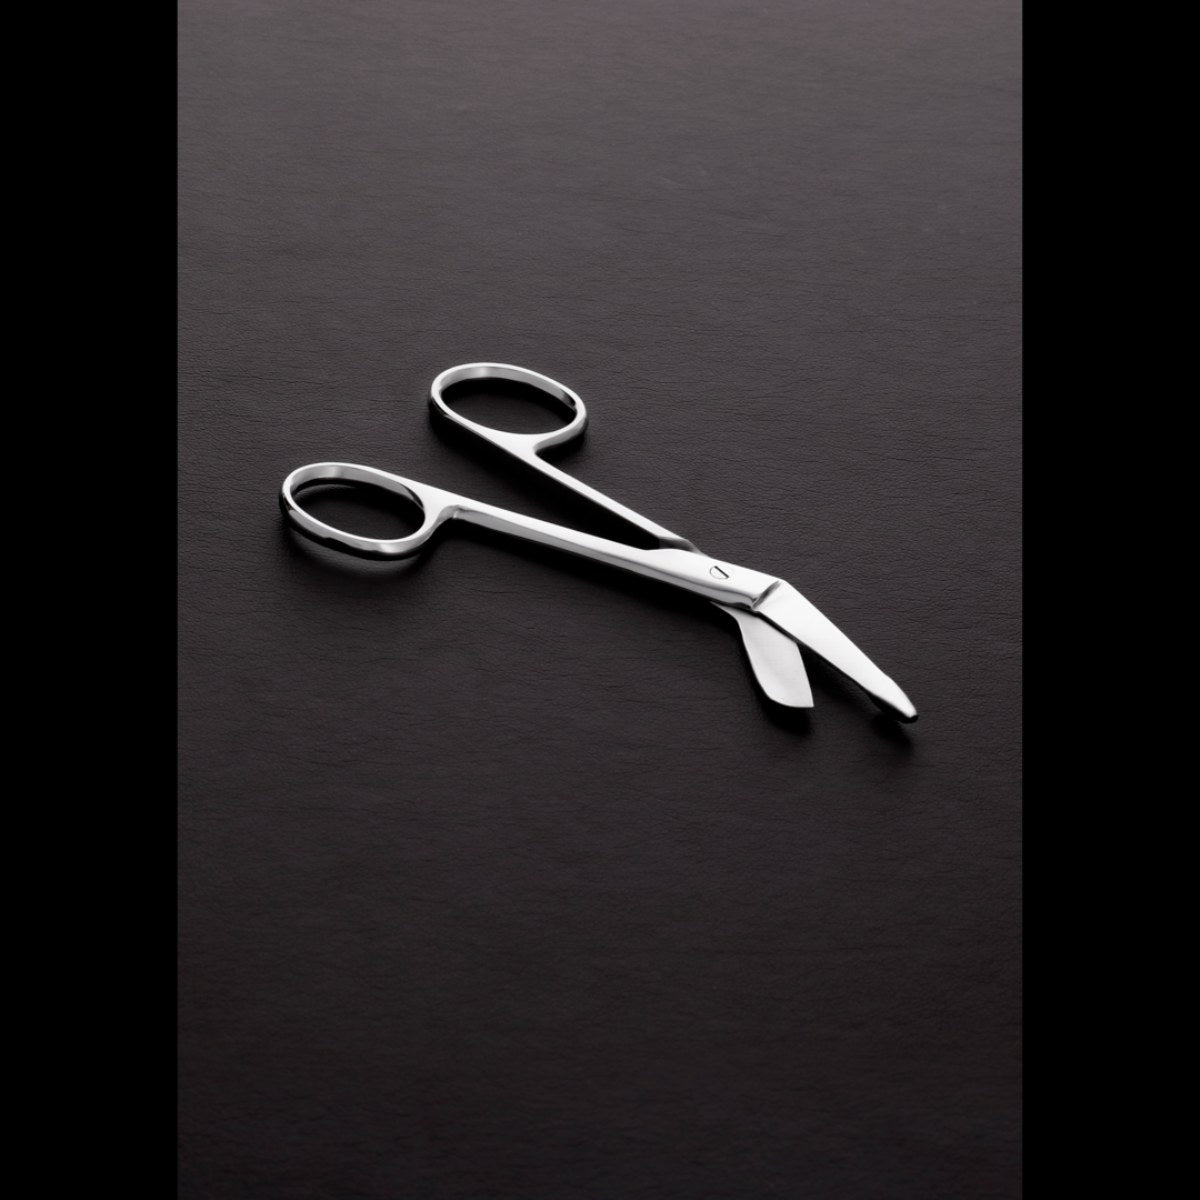 bondage scissors